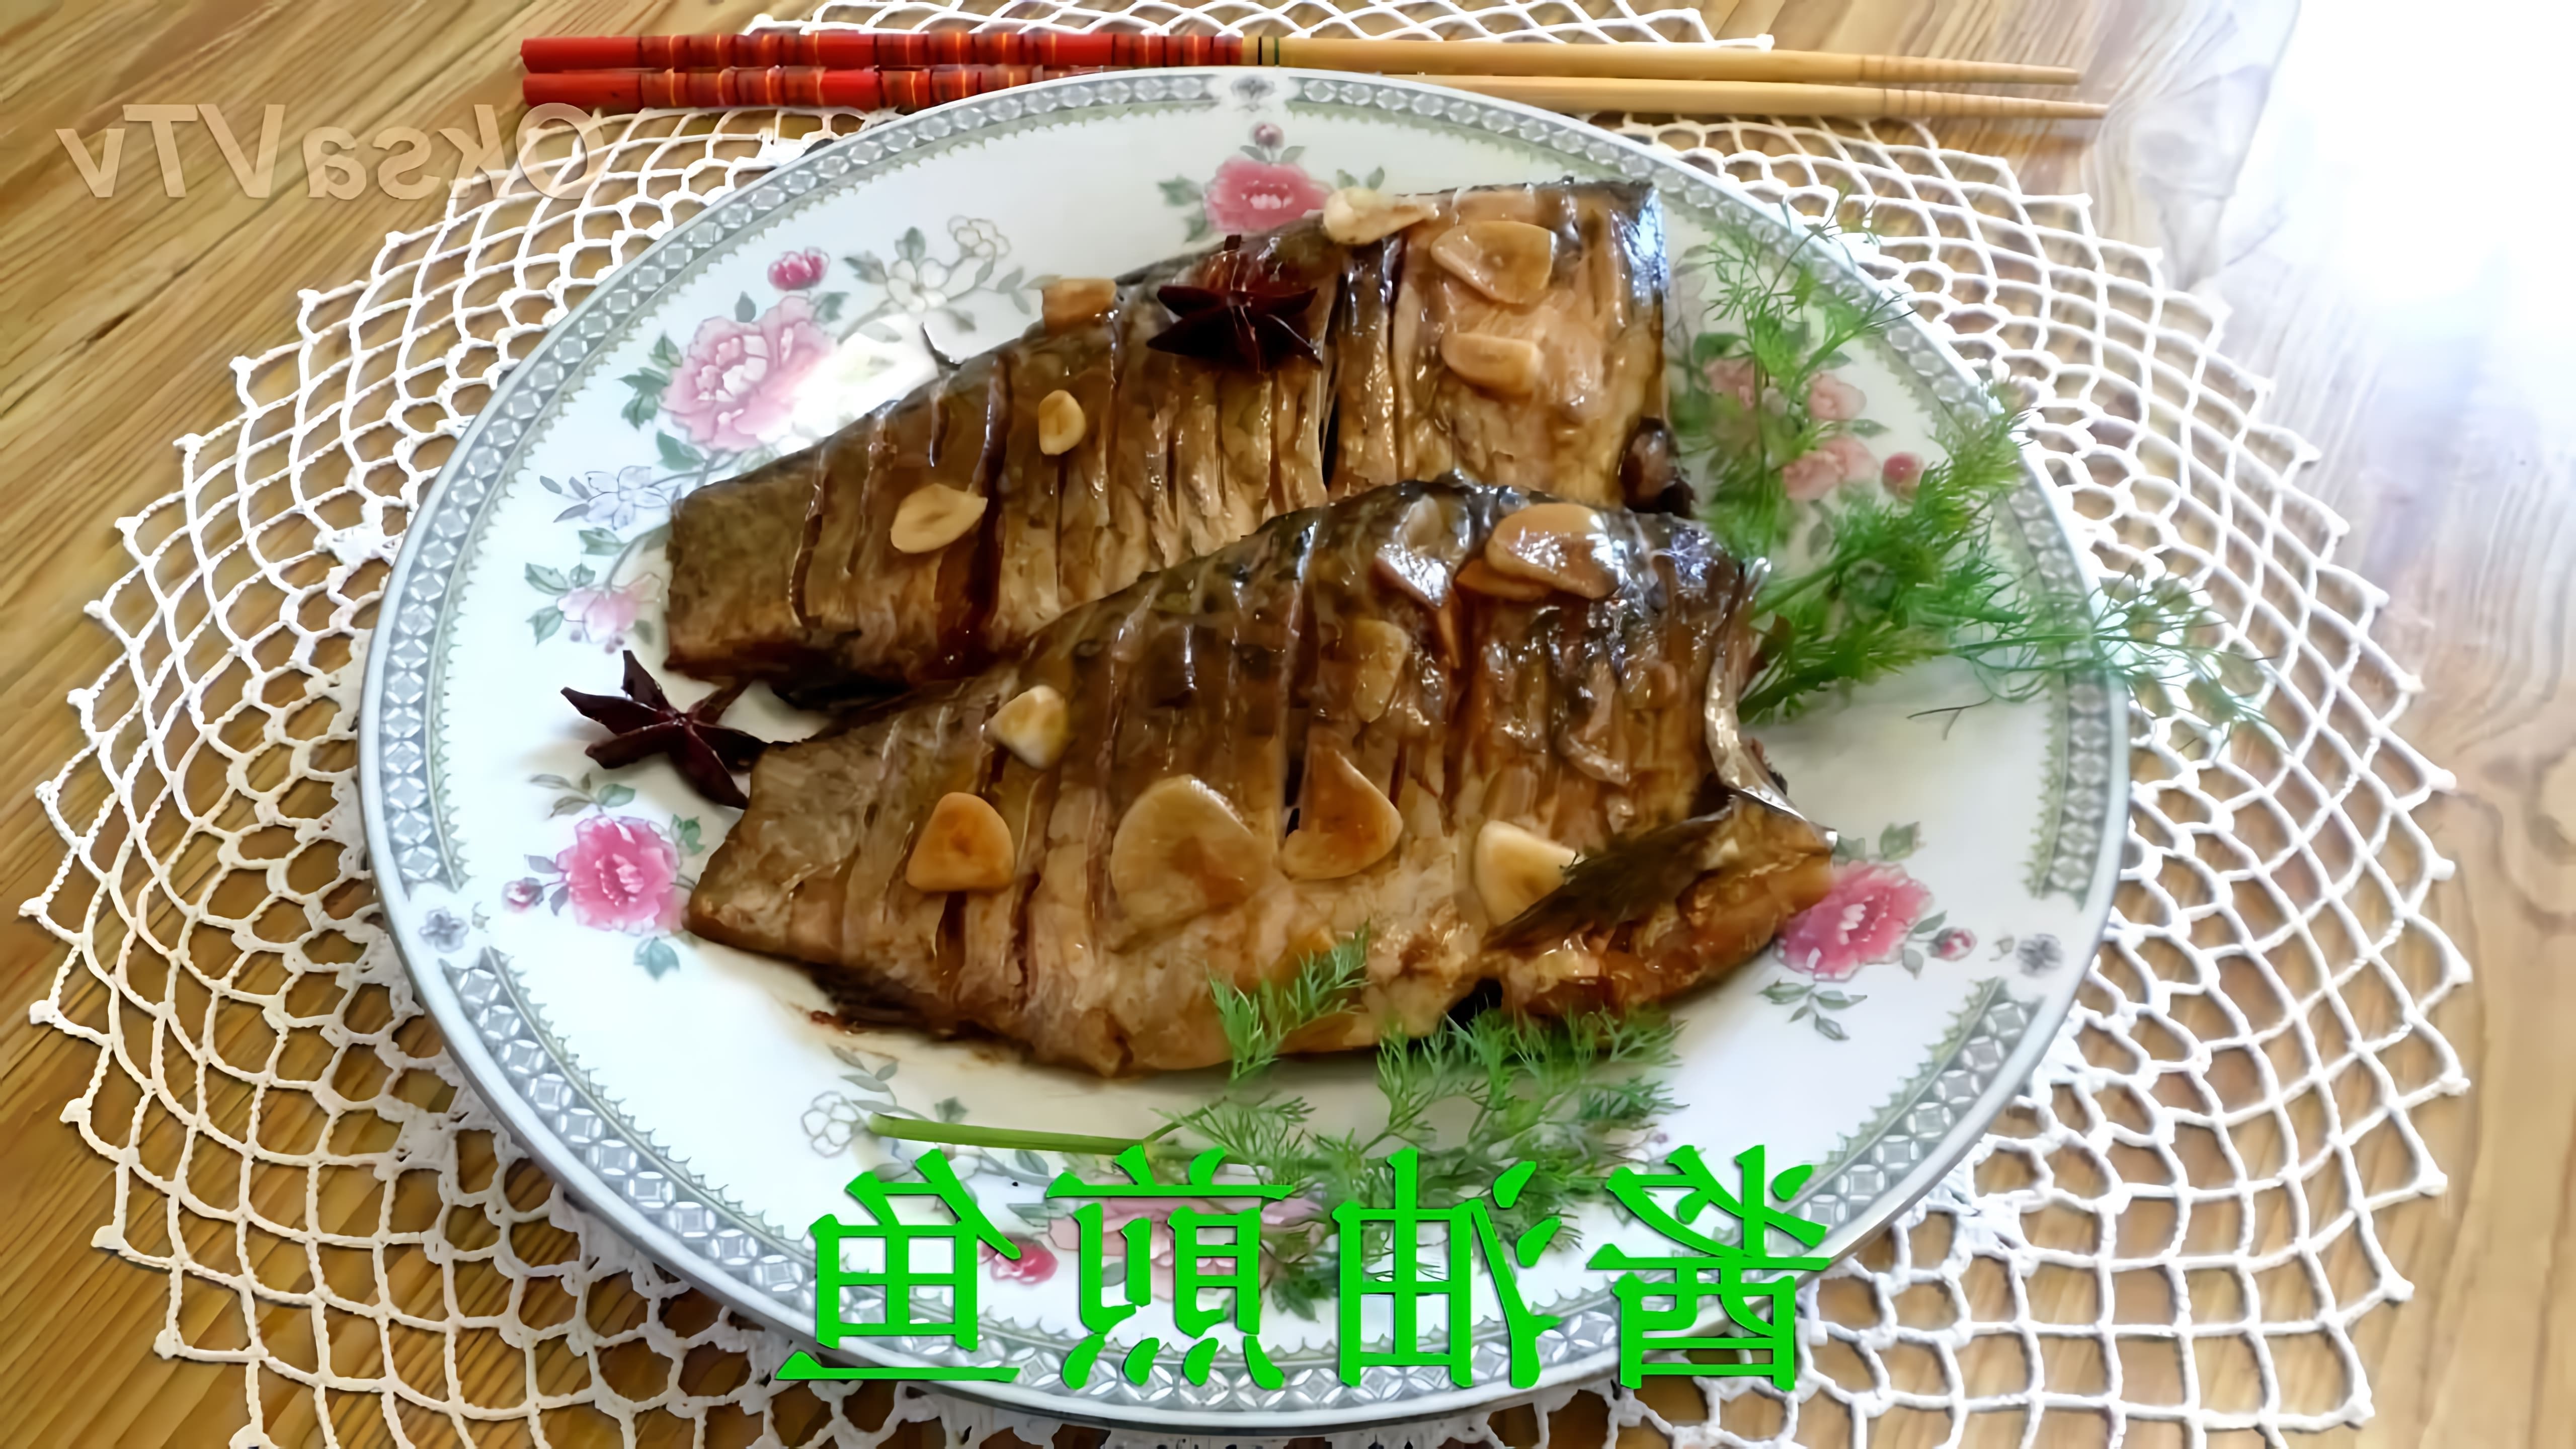 В этом видео демонстрируется процесс приготовления рыбы в соевом соусе по китайскому рецепту